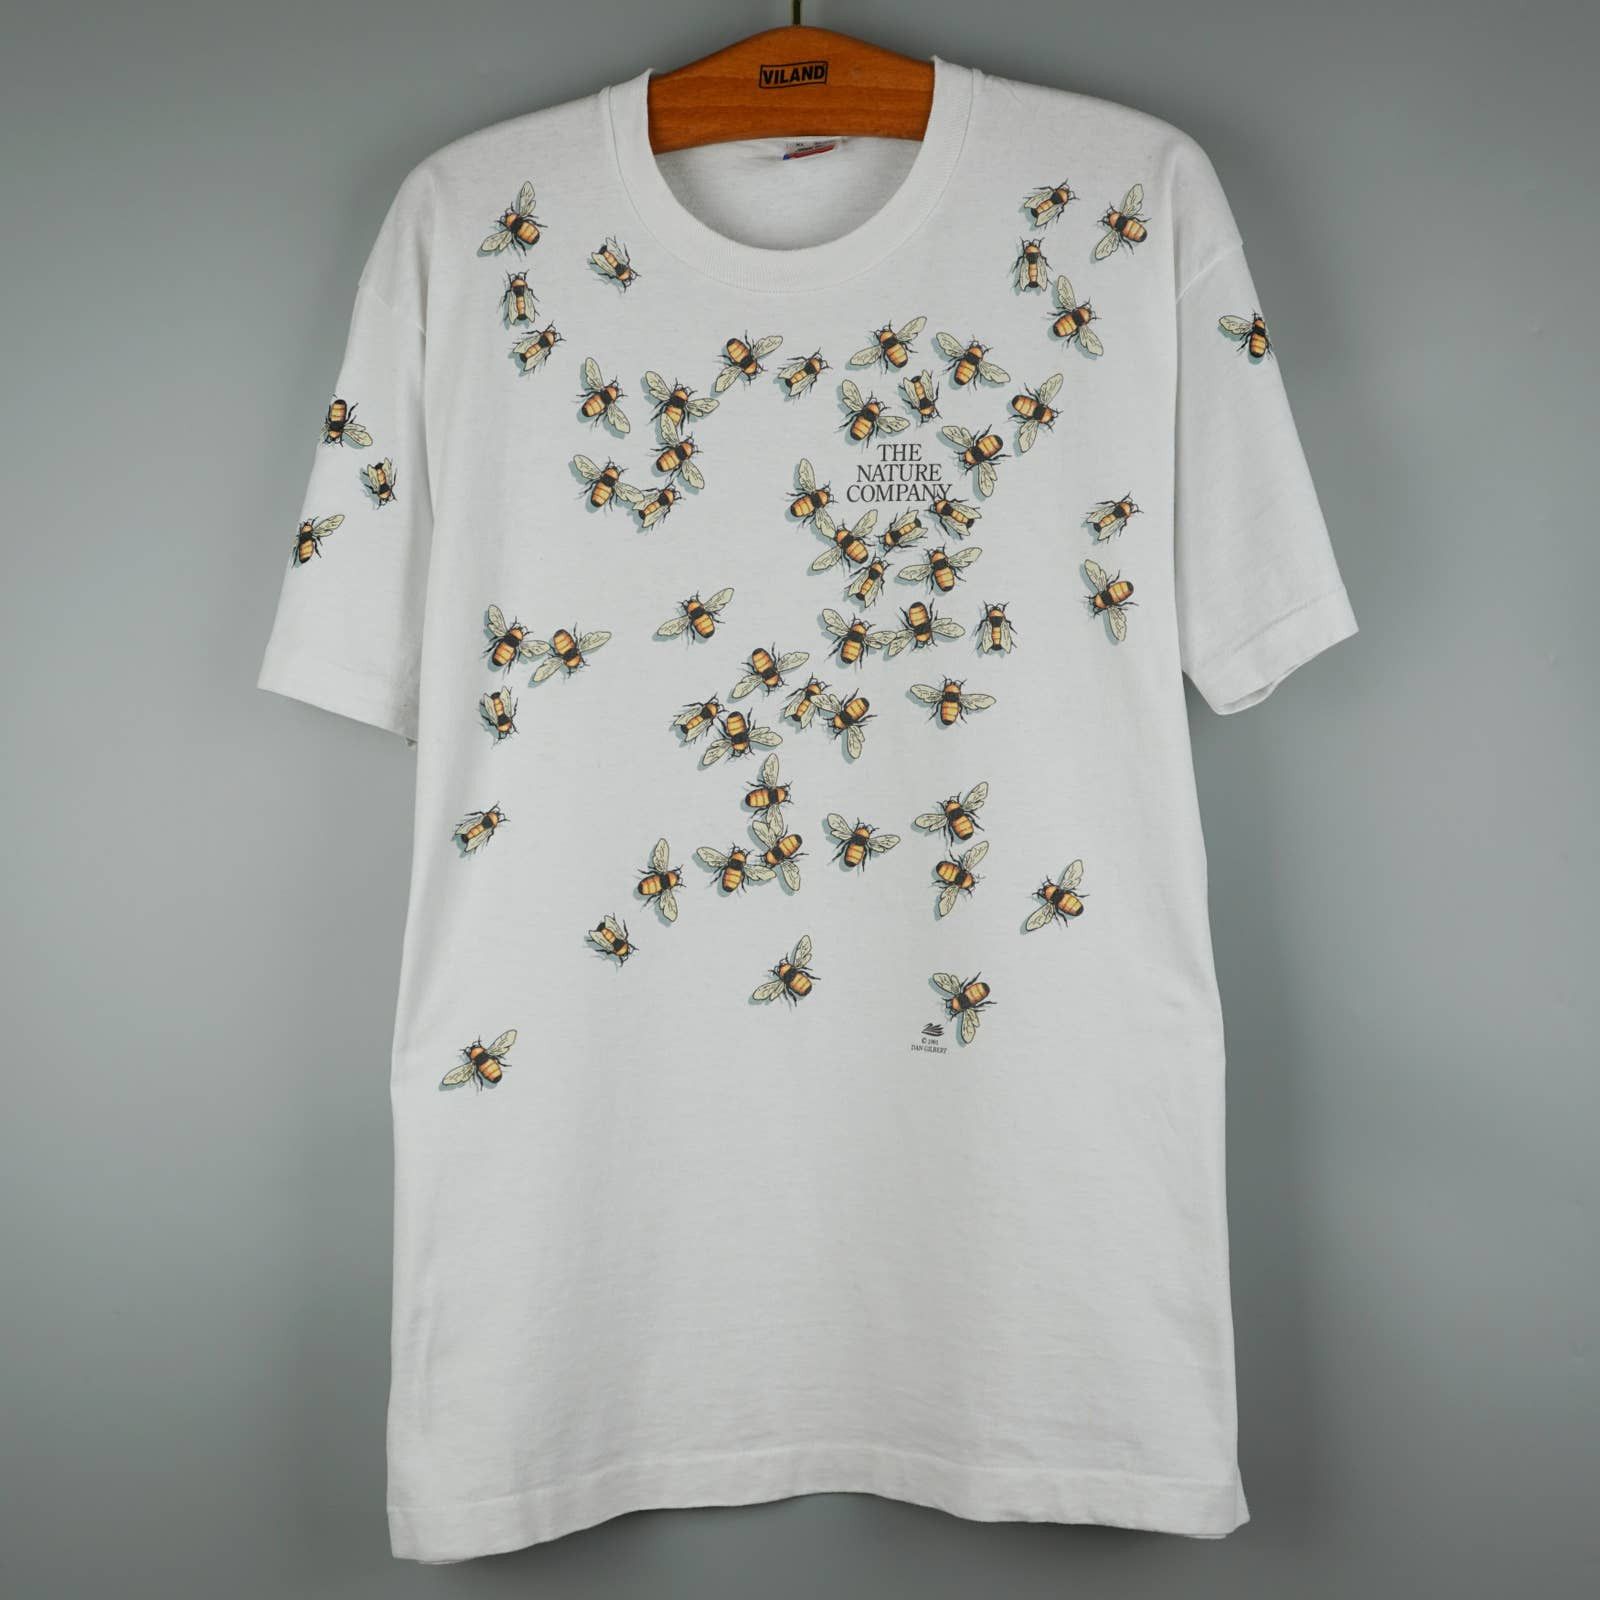 Vintage 1991 Dan Gilbert Honey Bees t-shirt | Grailed